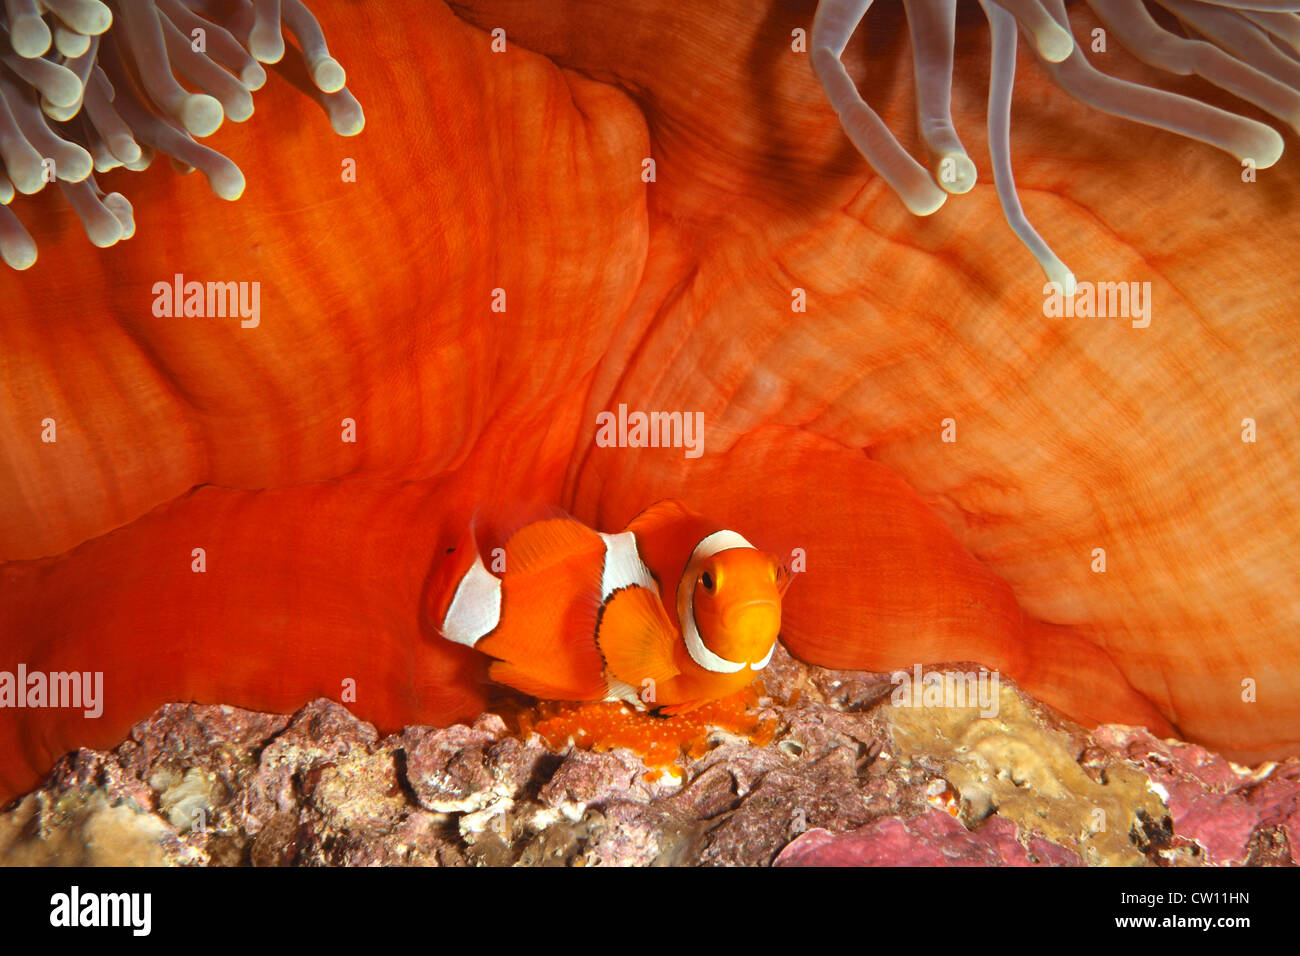 Un Clown Anemonefish, Amphiprion percula, tendendo le uova deposte alla base dell'ospite magnifico Anemone, Heteractis magnifica. Foto Stock